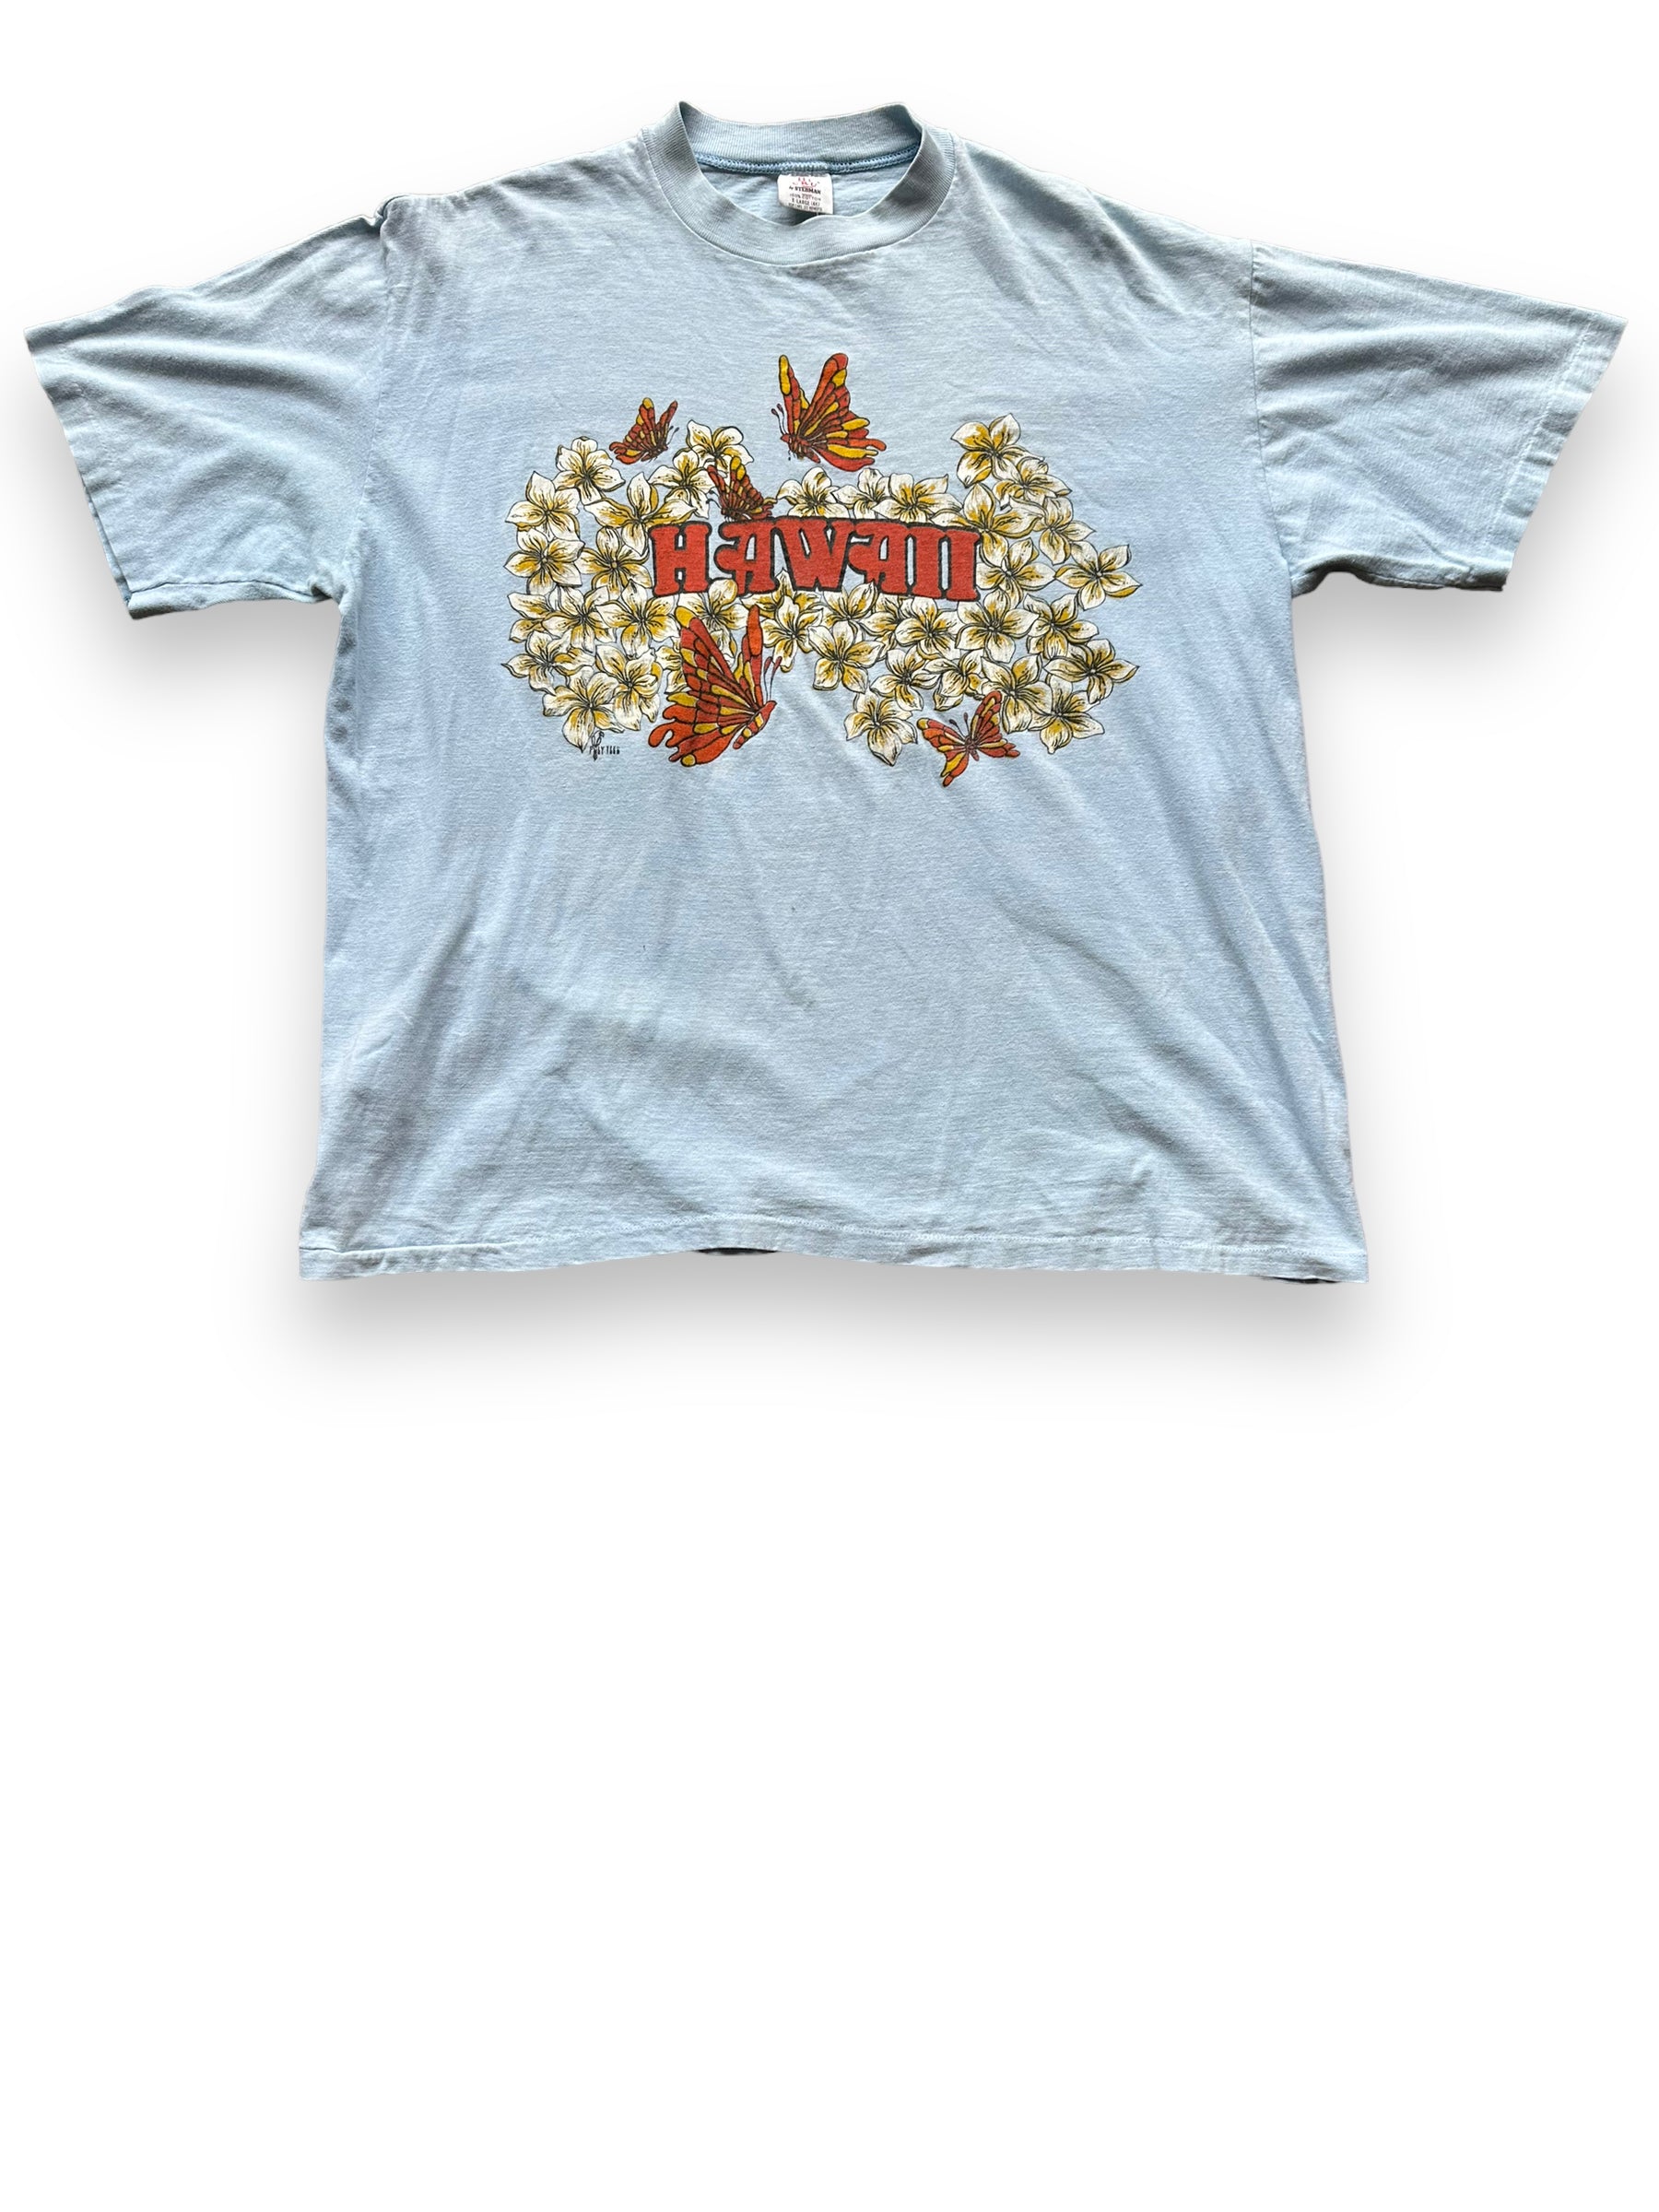 The Barn Owl Vintage Hawaii Graphic Tee Sz XL | Vintage T-shirts Seattle | Barn Owl Vintage Tees Seattle